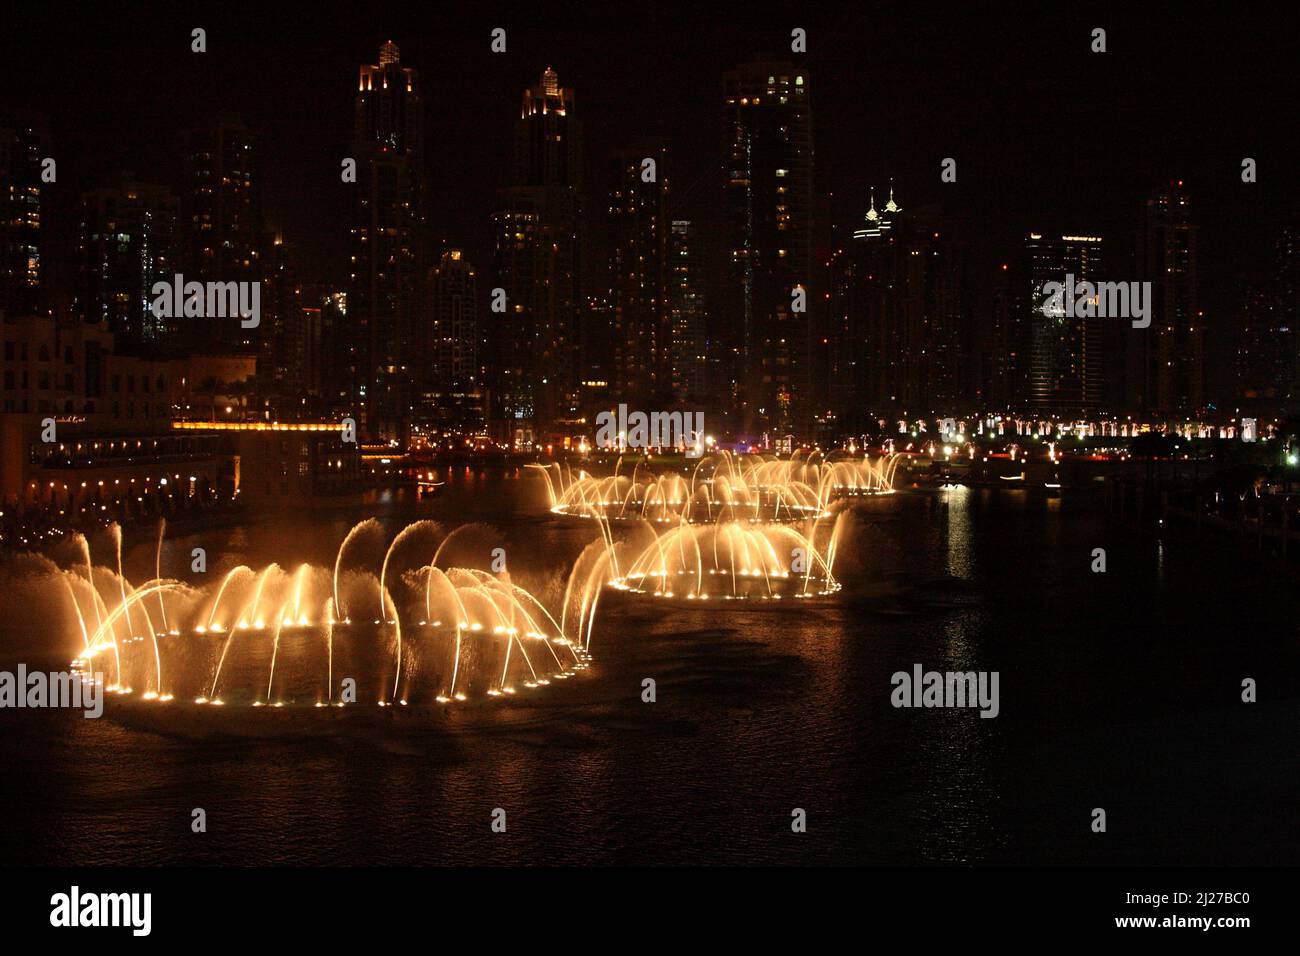 Dubai - Dubai Fountain / Dubai - The Dubai Fountain / Stock Photo